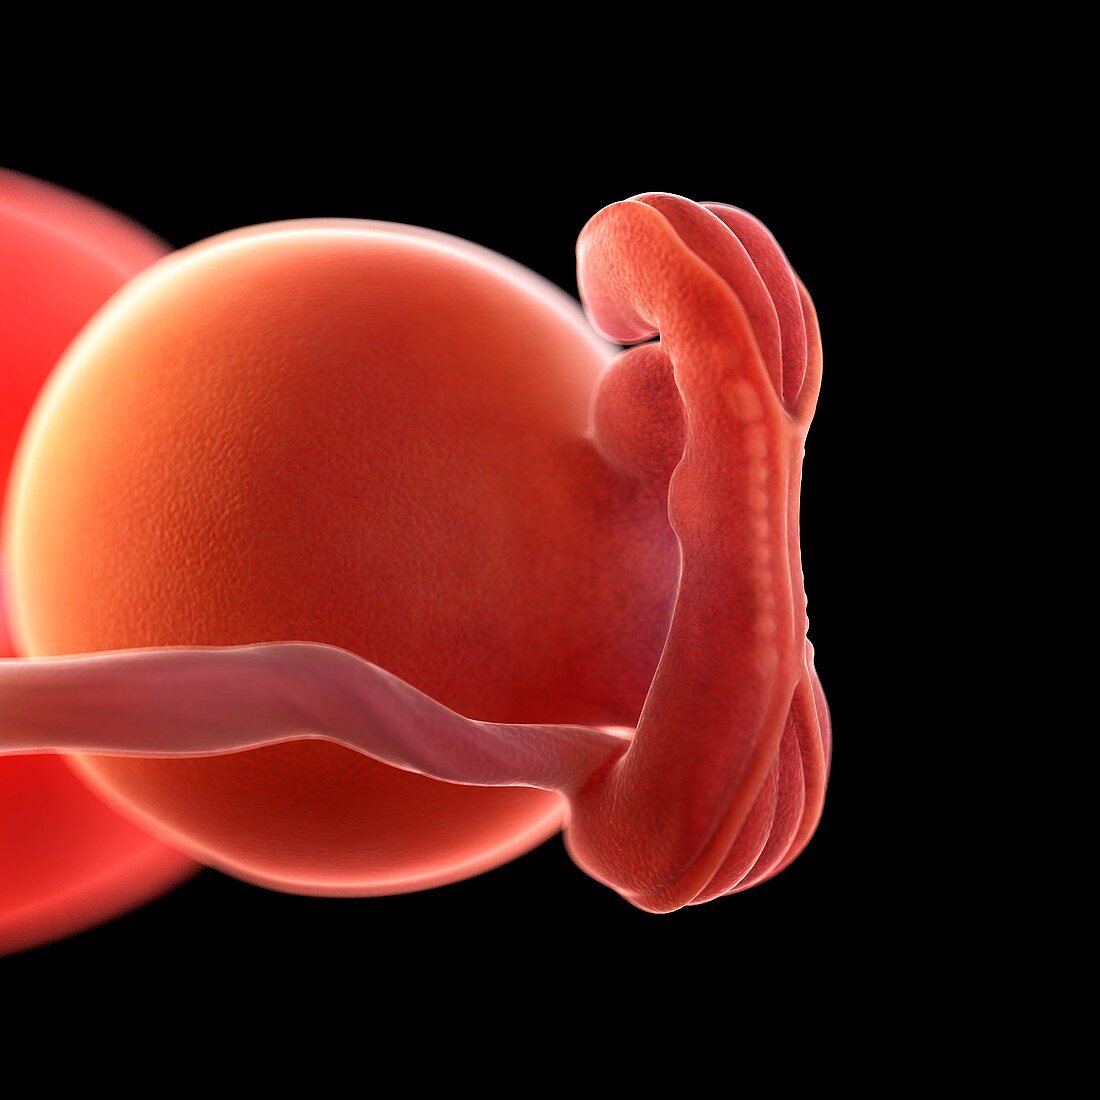 Human foetus age 5 weeks, illustration